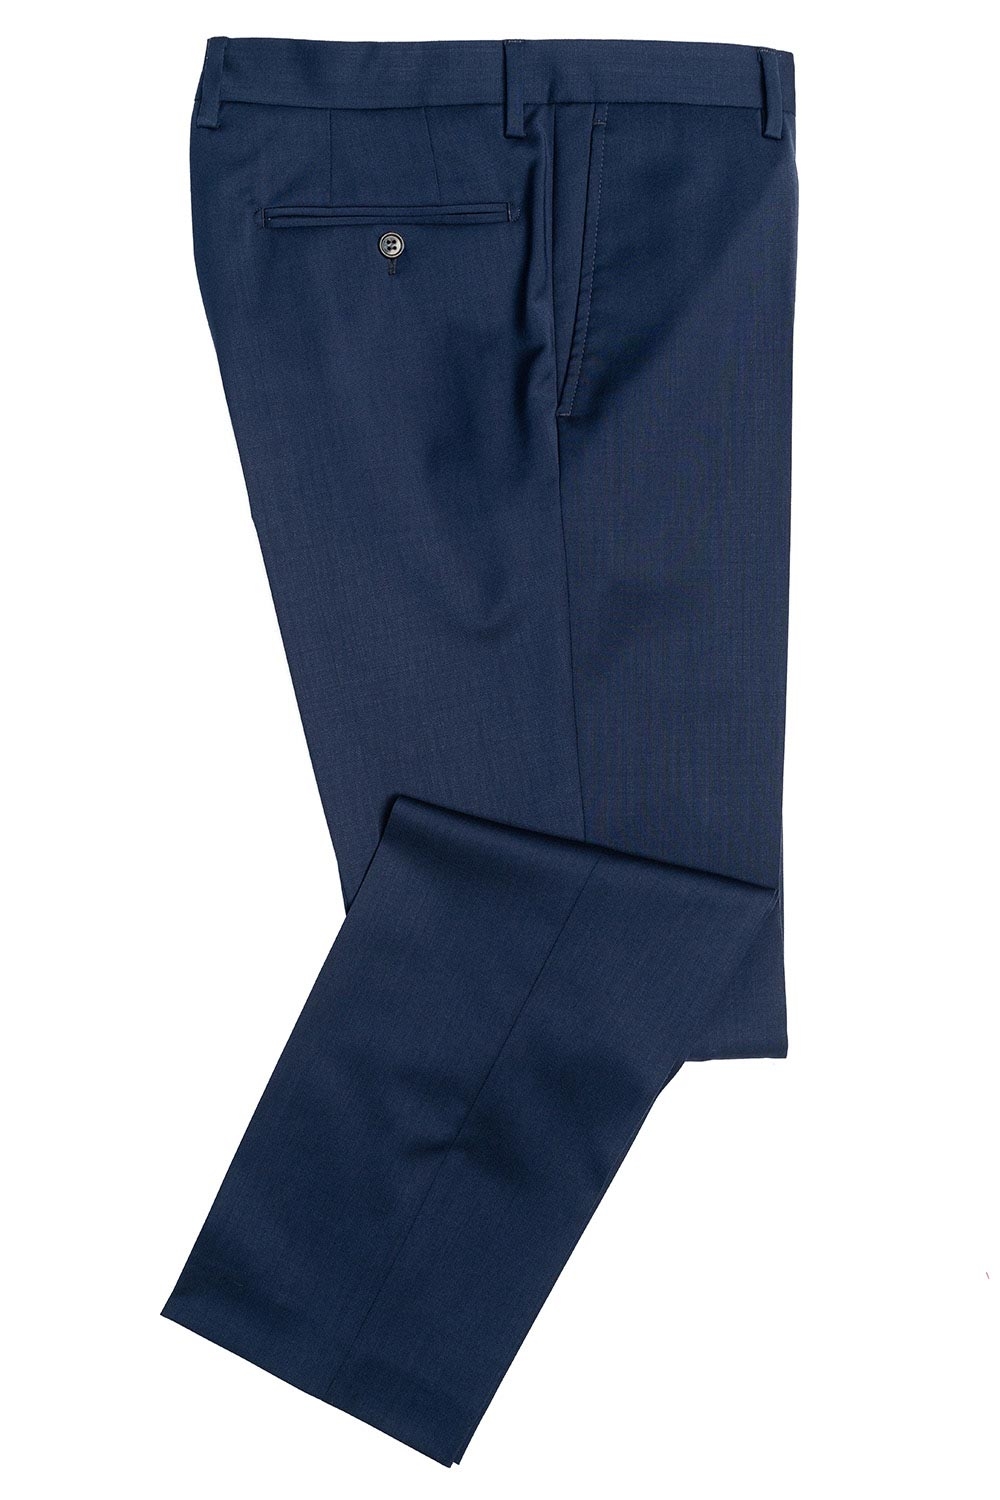 Pantaloni superslim riccof albastri uni 0